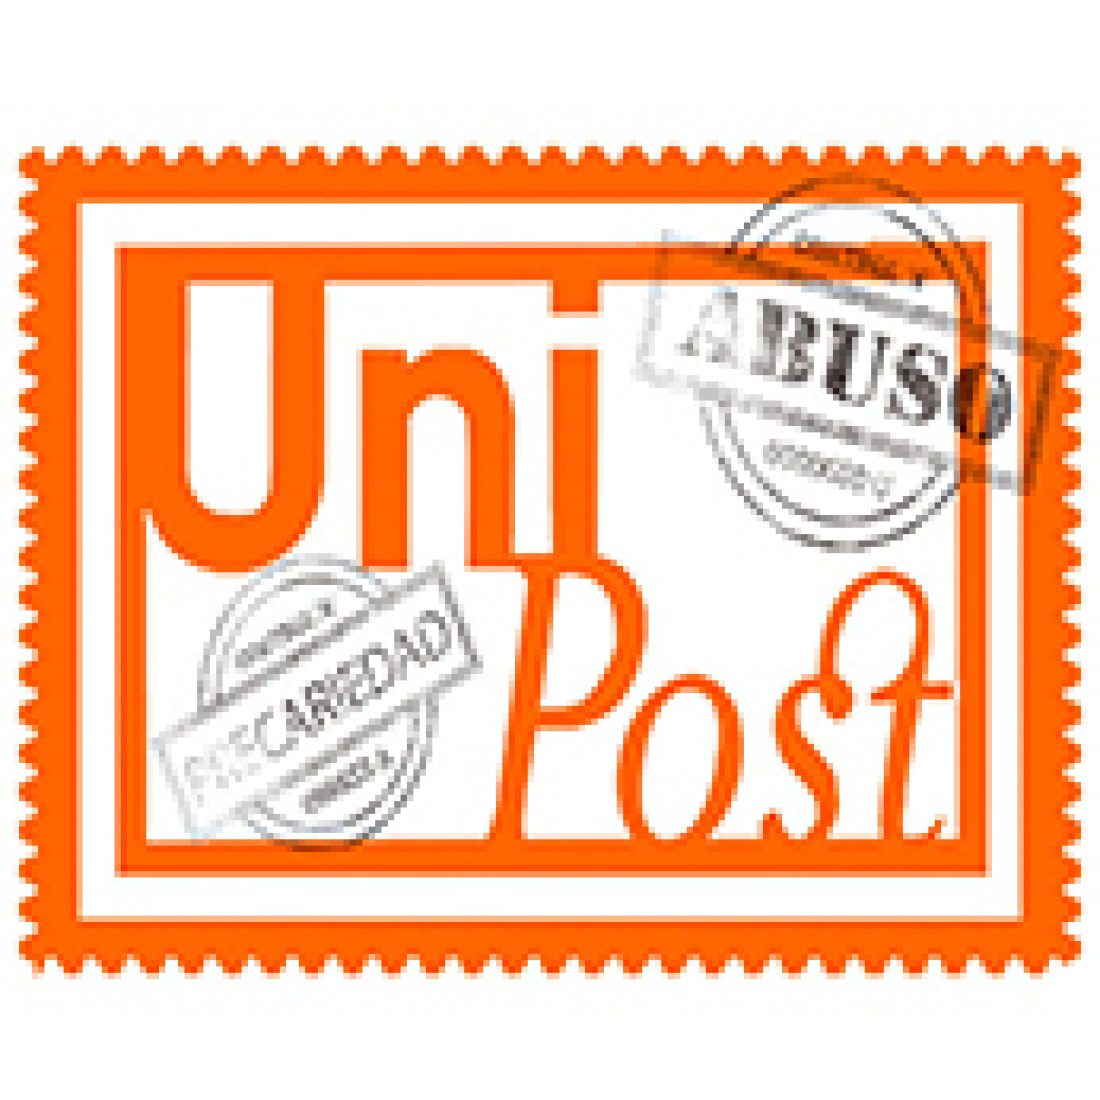 CGT convoca paros totales indefinidos en Unipost a partir del 7 de noviembre de 2016